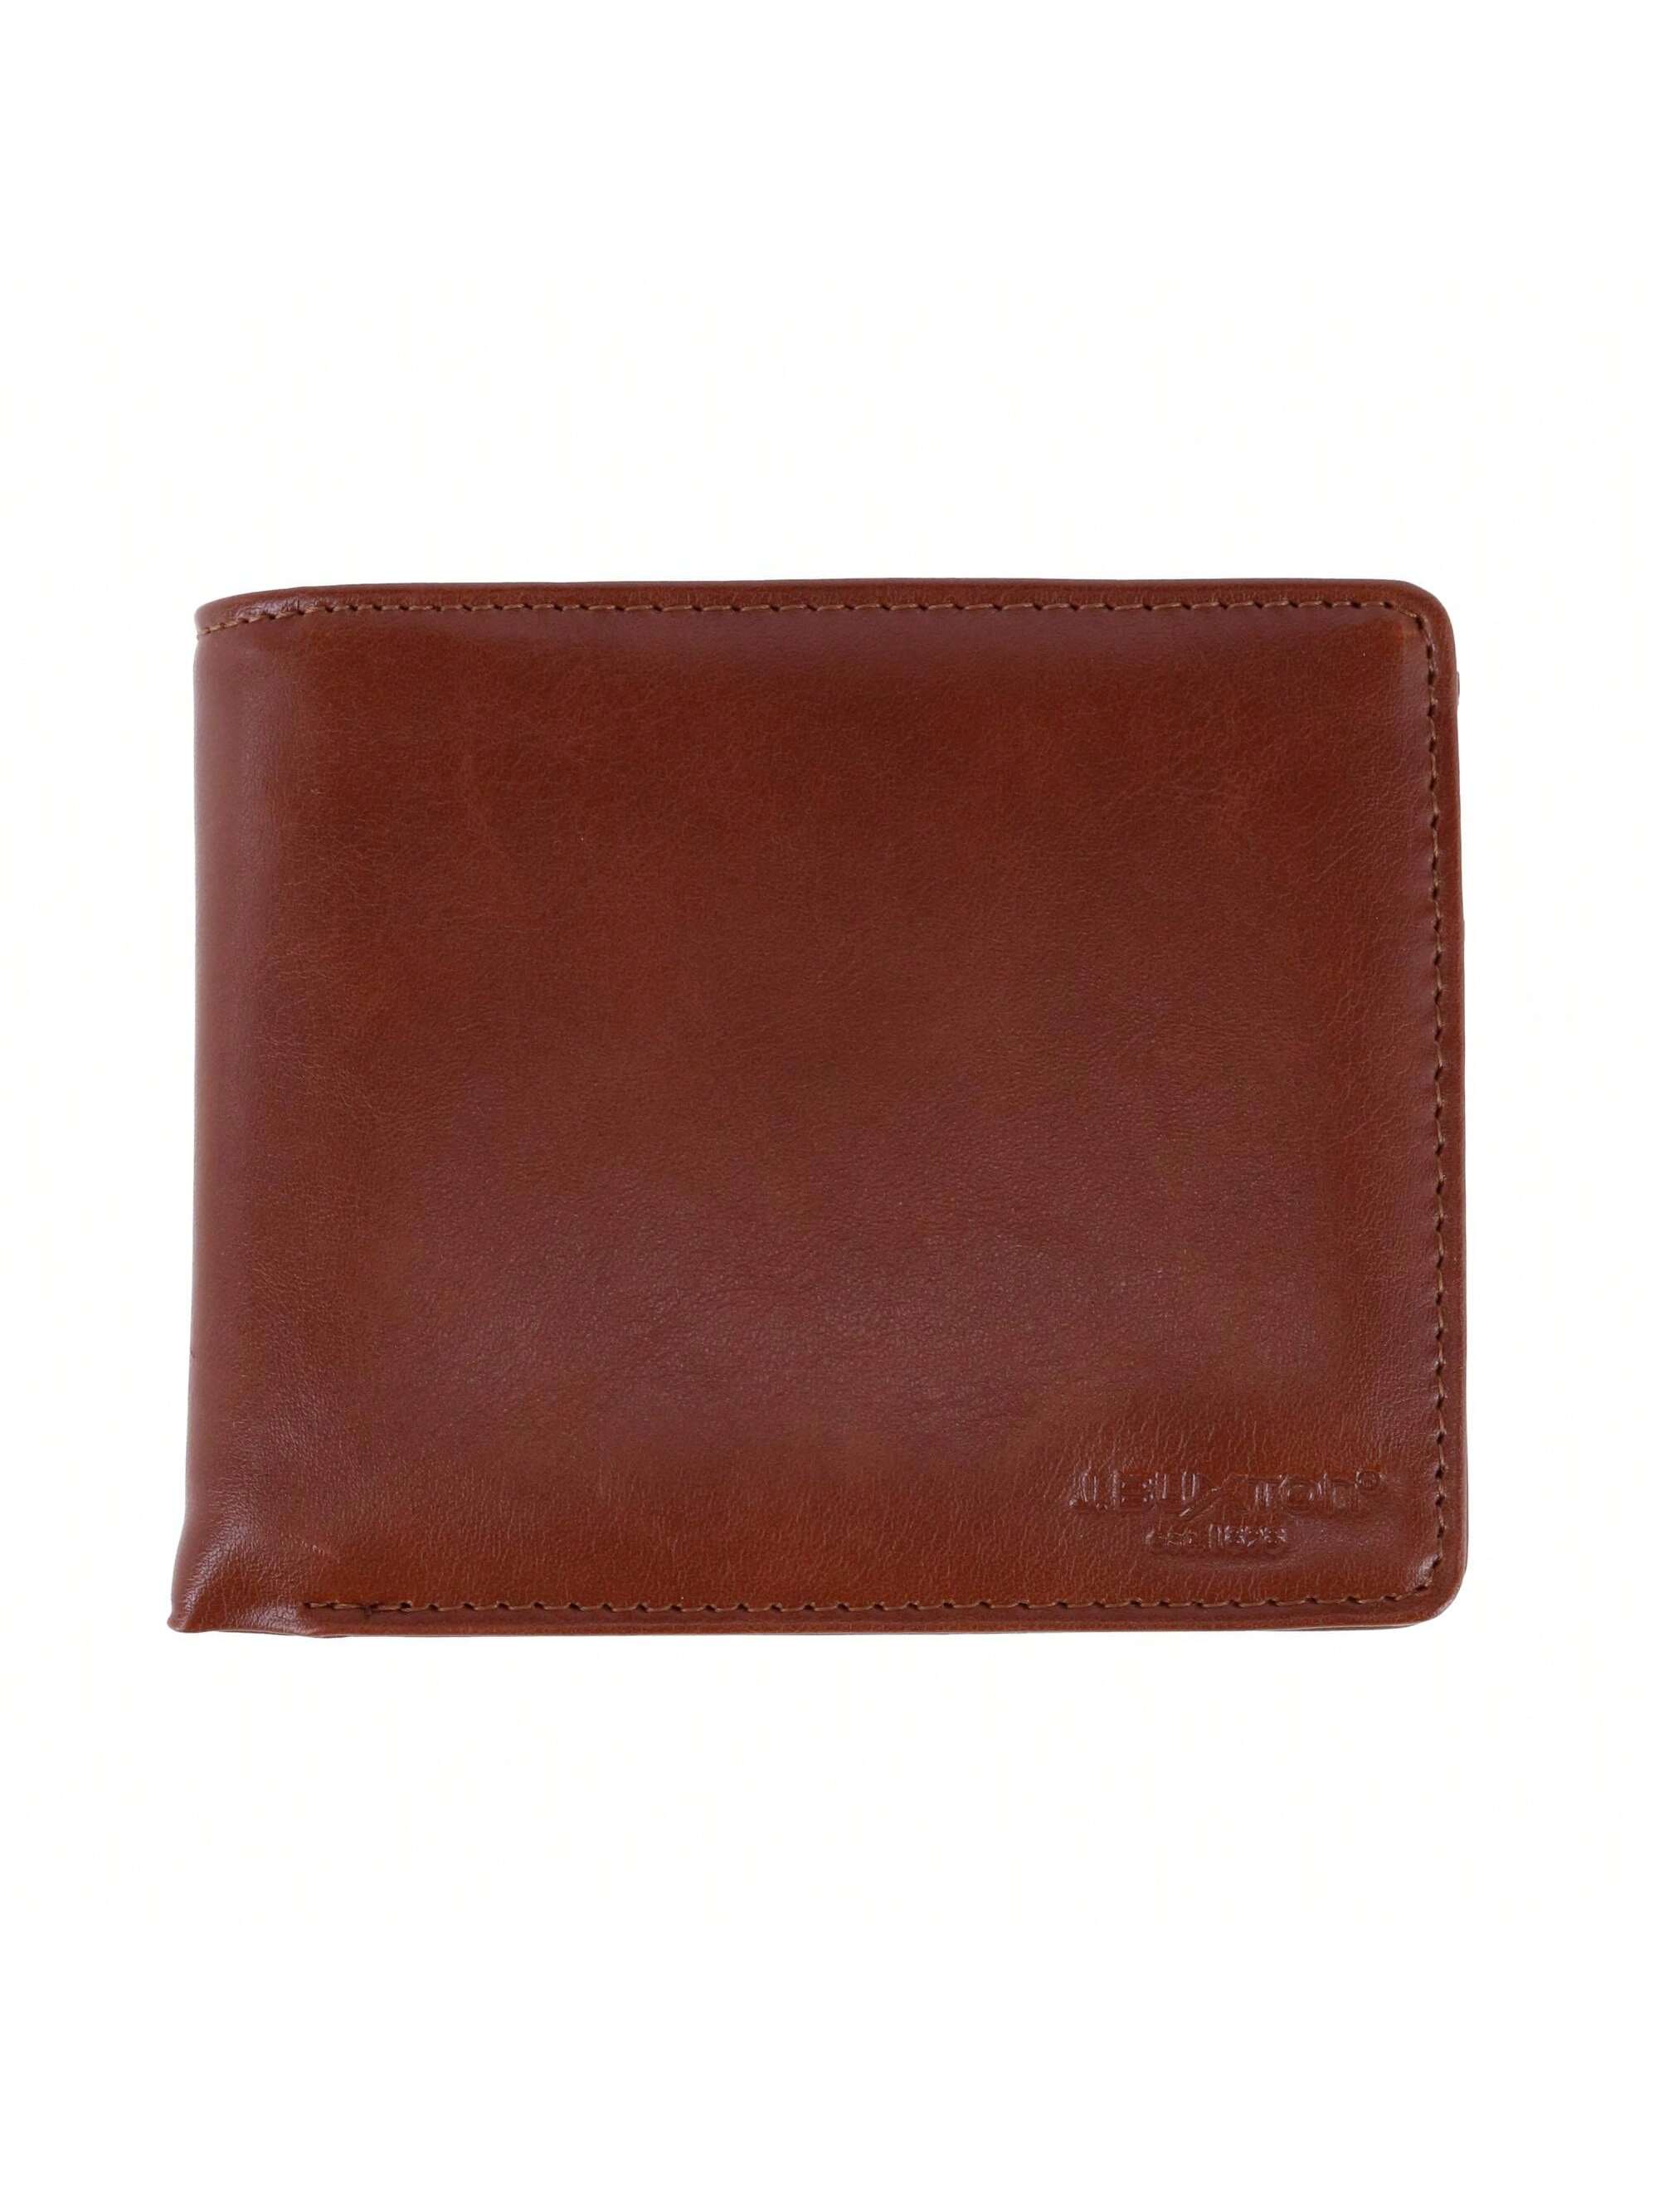 цена Мужской кошелек Buxton из веганской кожи с RFID-метками и двойным складыванием, коричневый